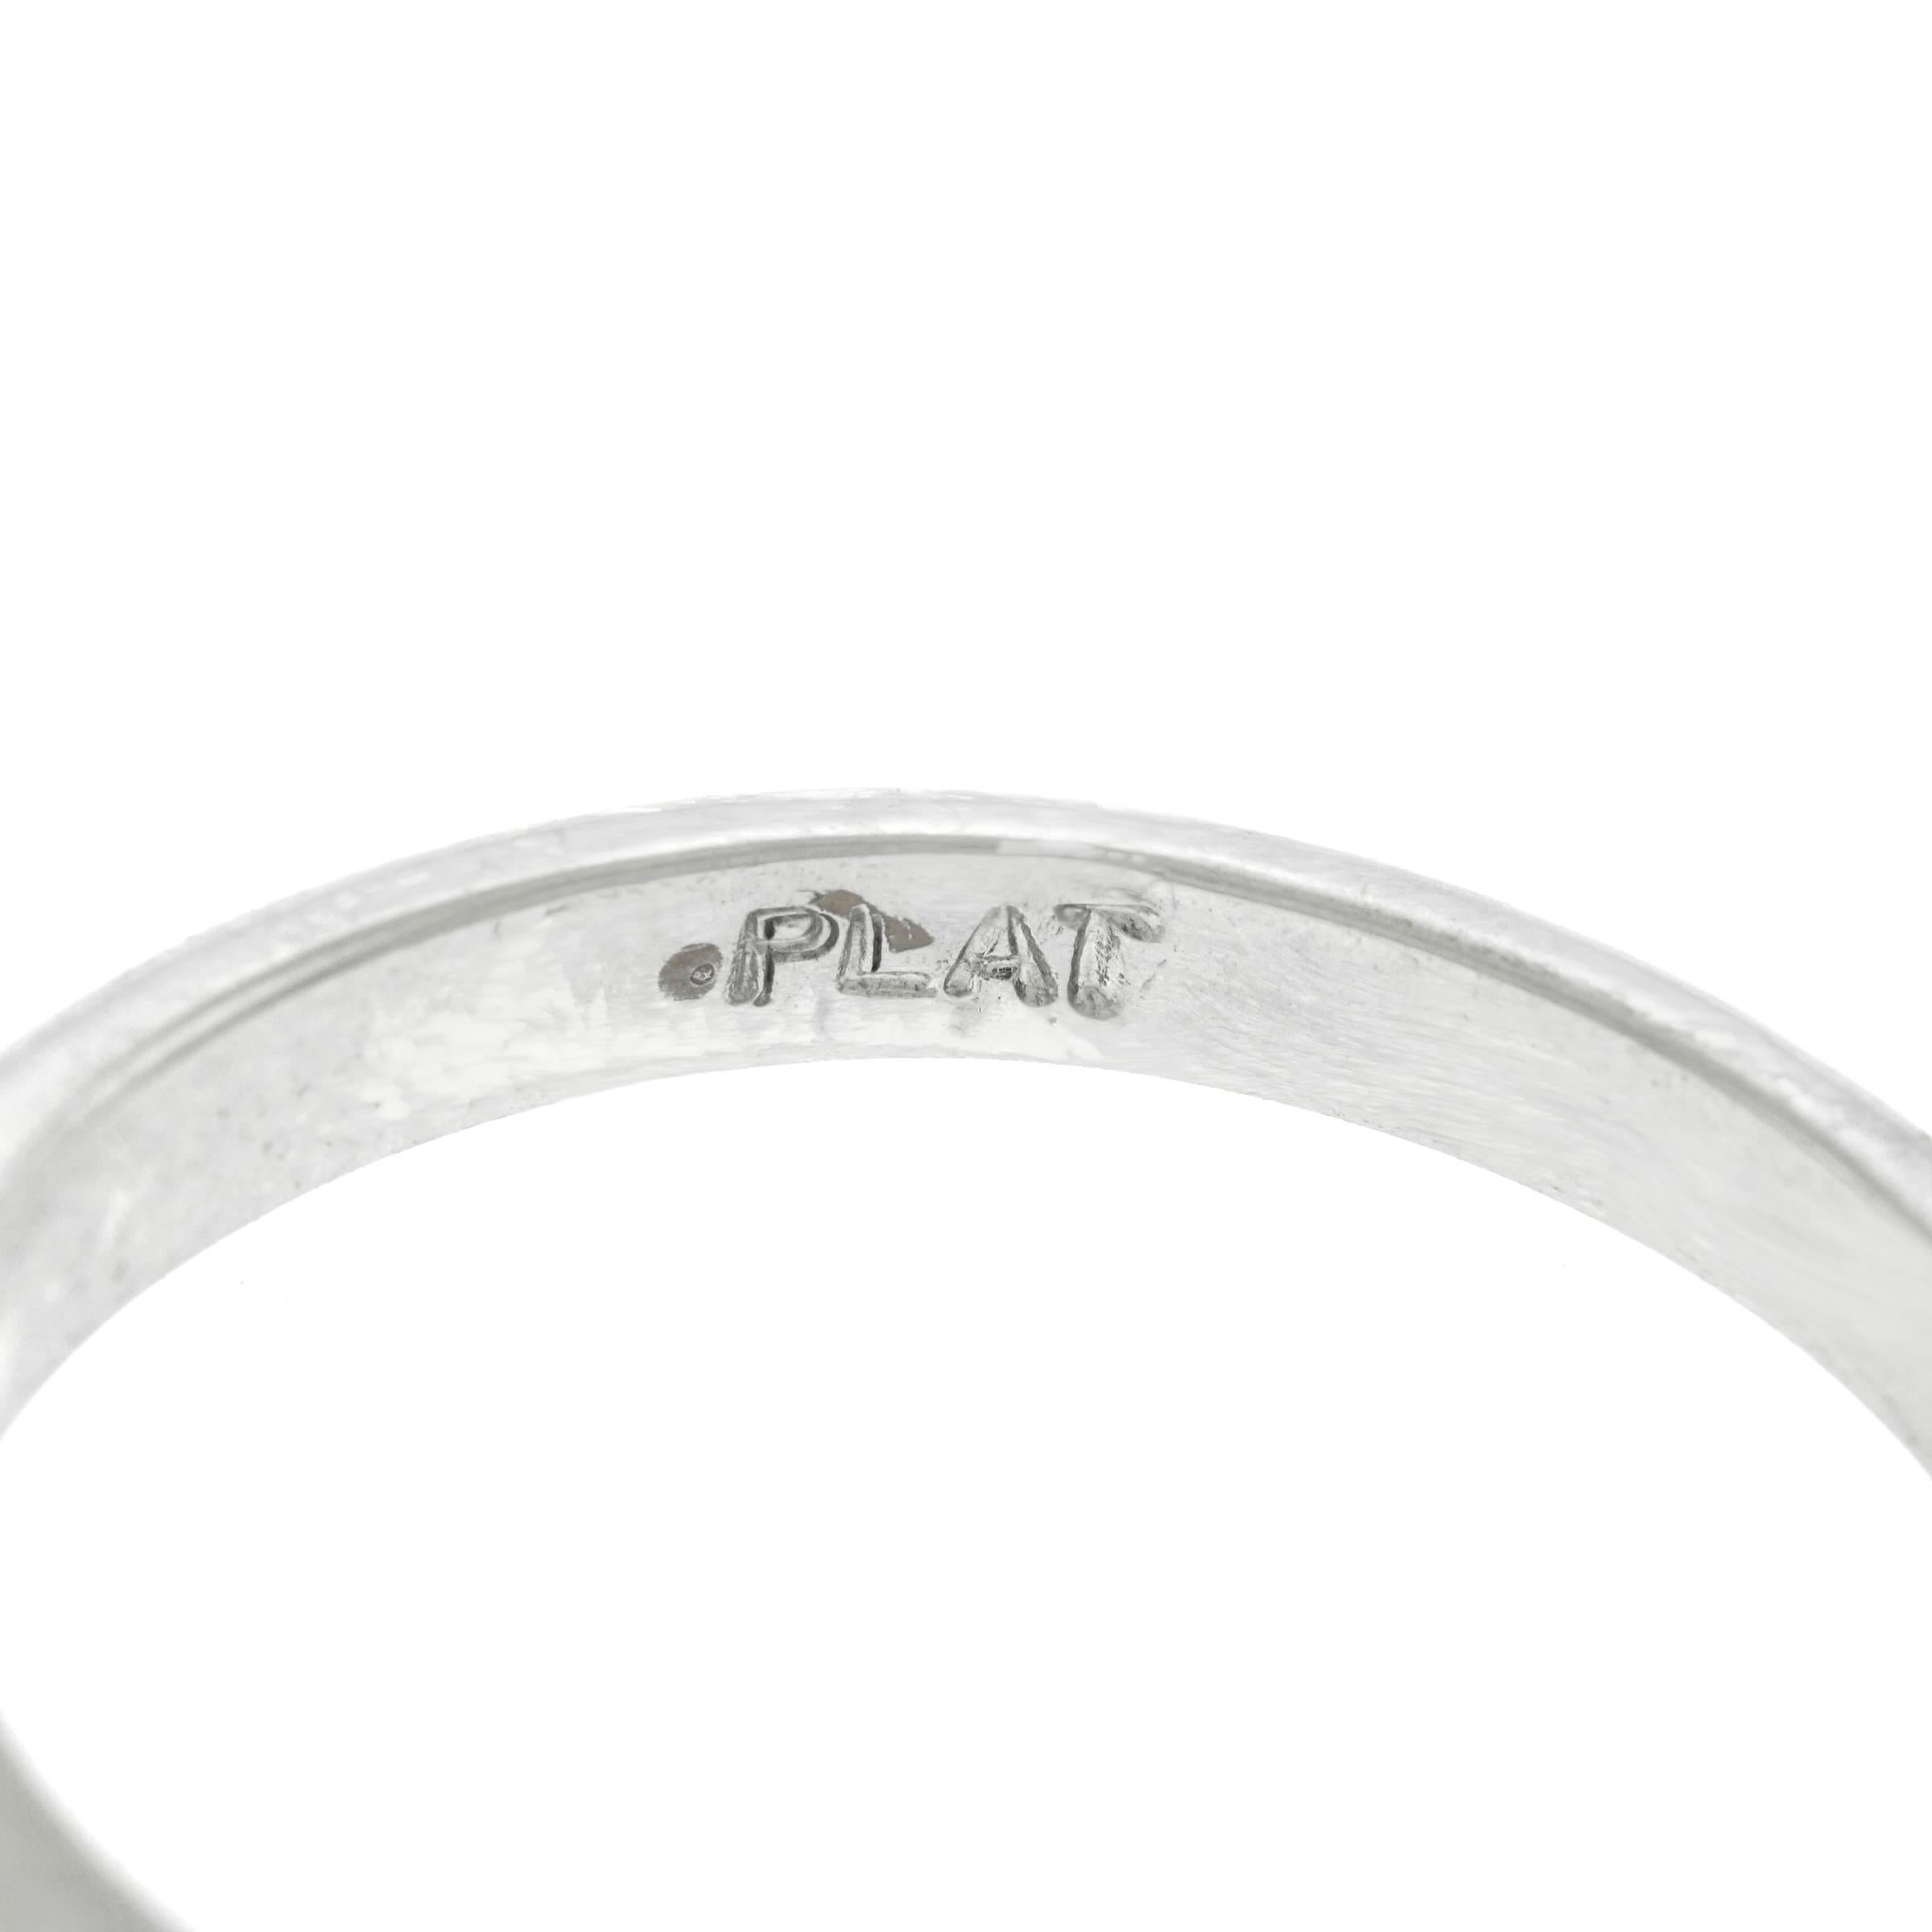 1.11 Carat Diamond Engagement Ring in Platinum GIA 1